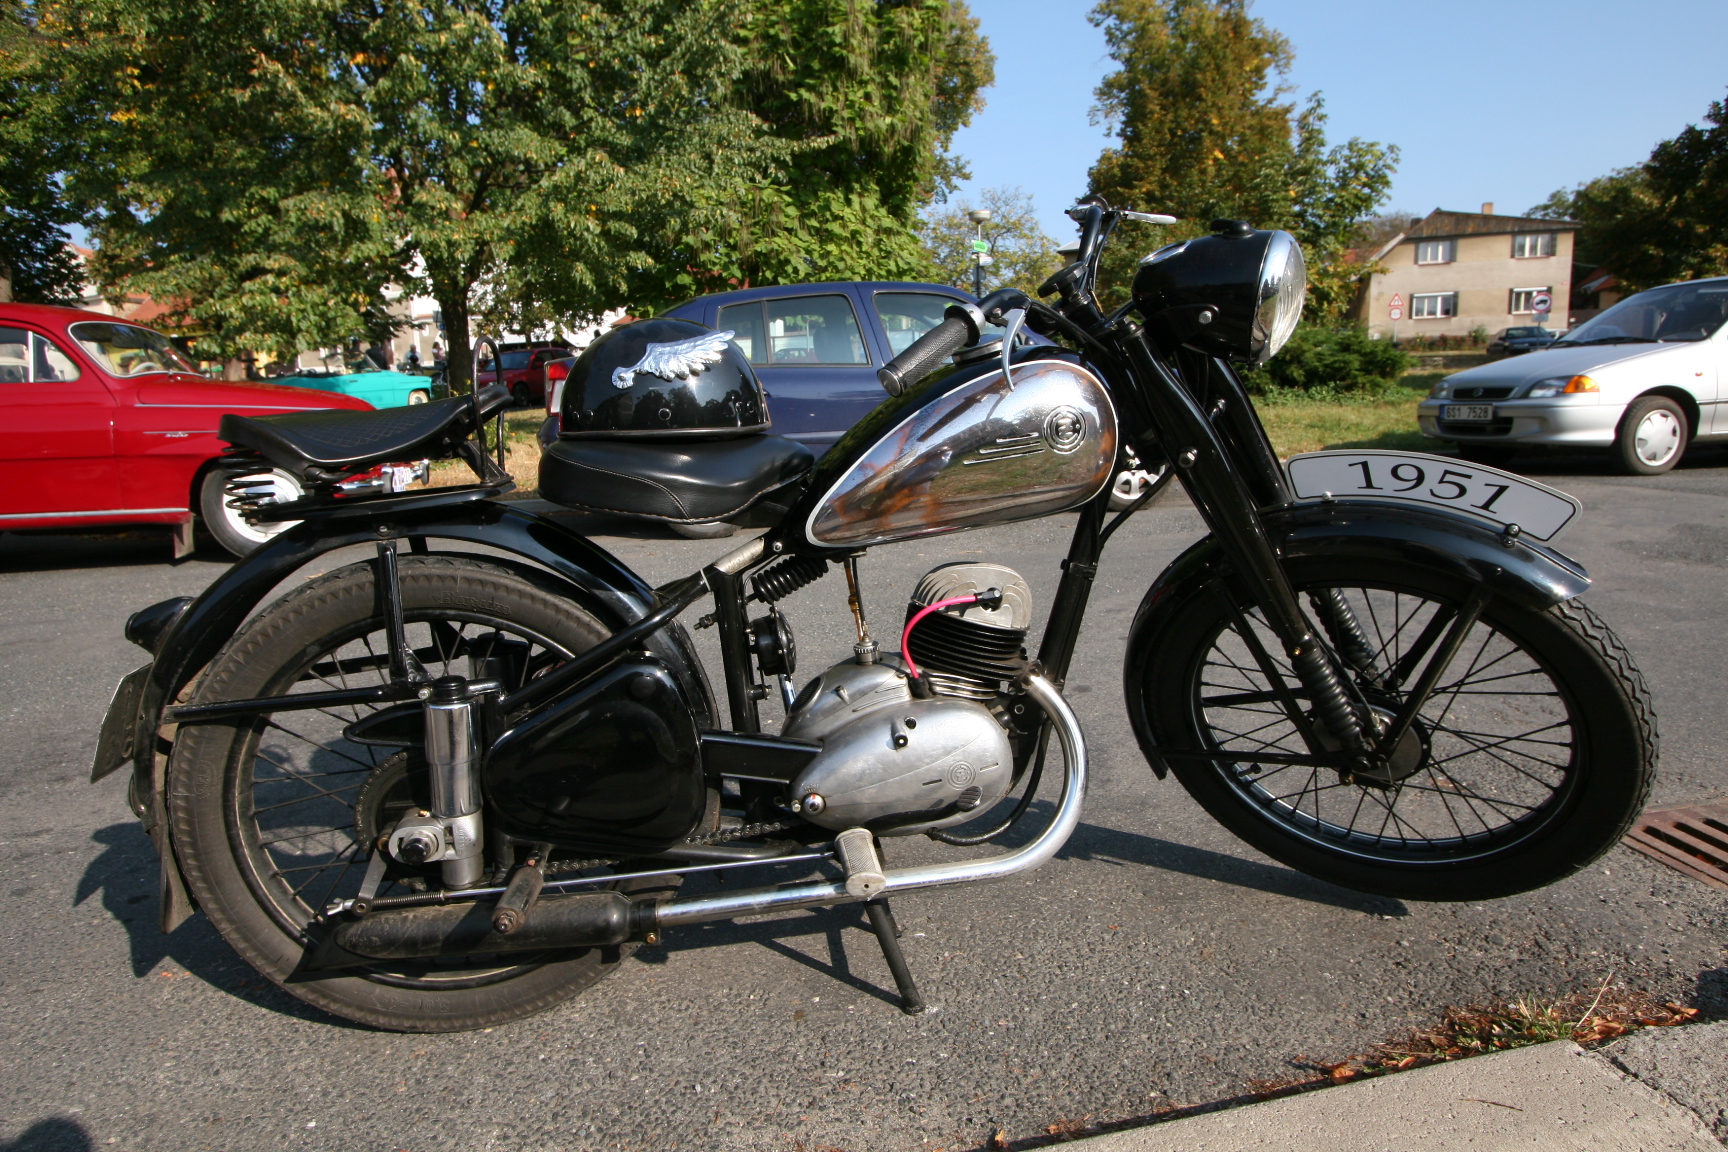     Motocykl ČZ  